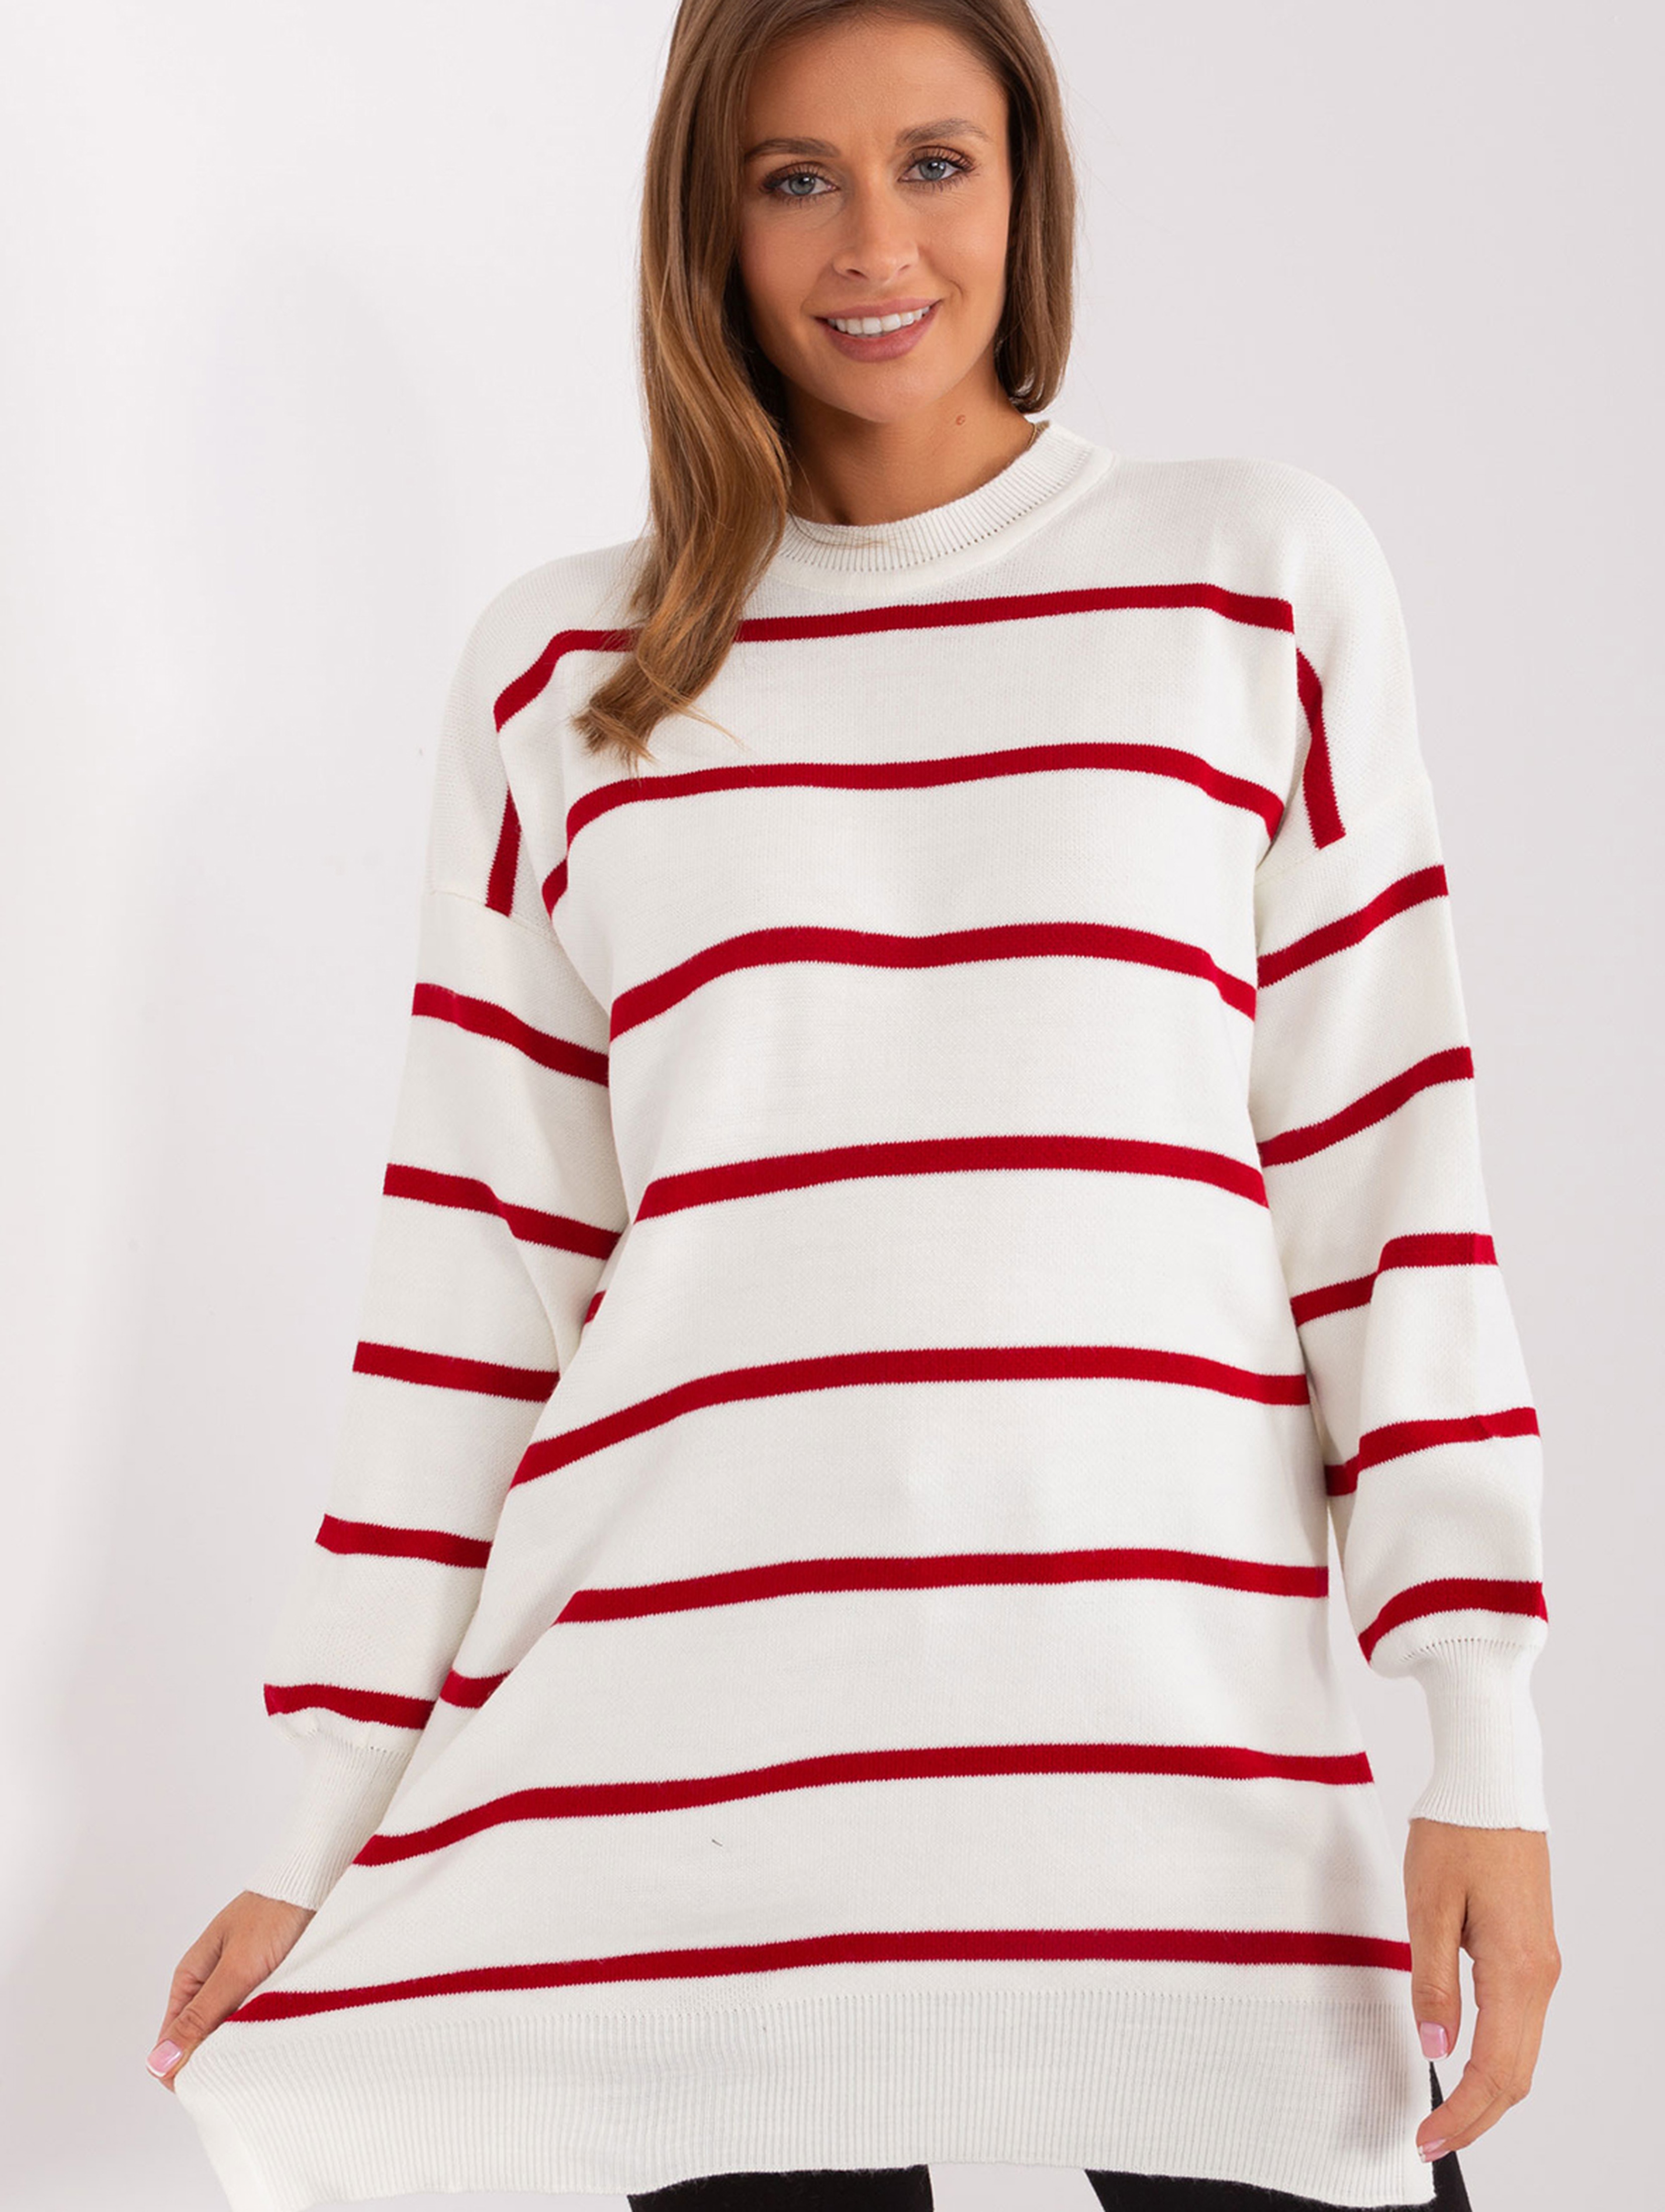 Bordowy-ecru damski luźny sweter